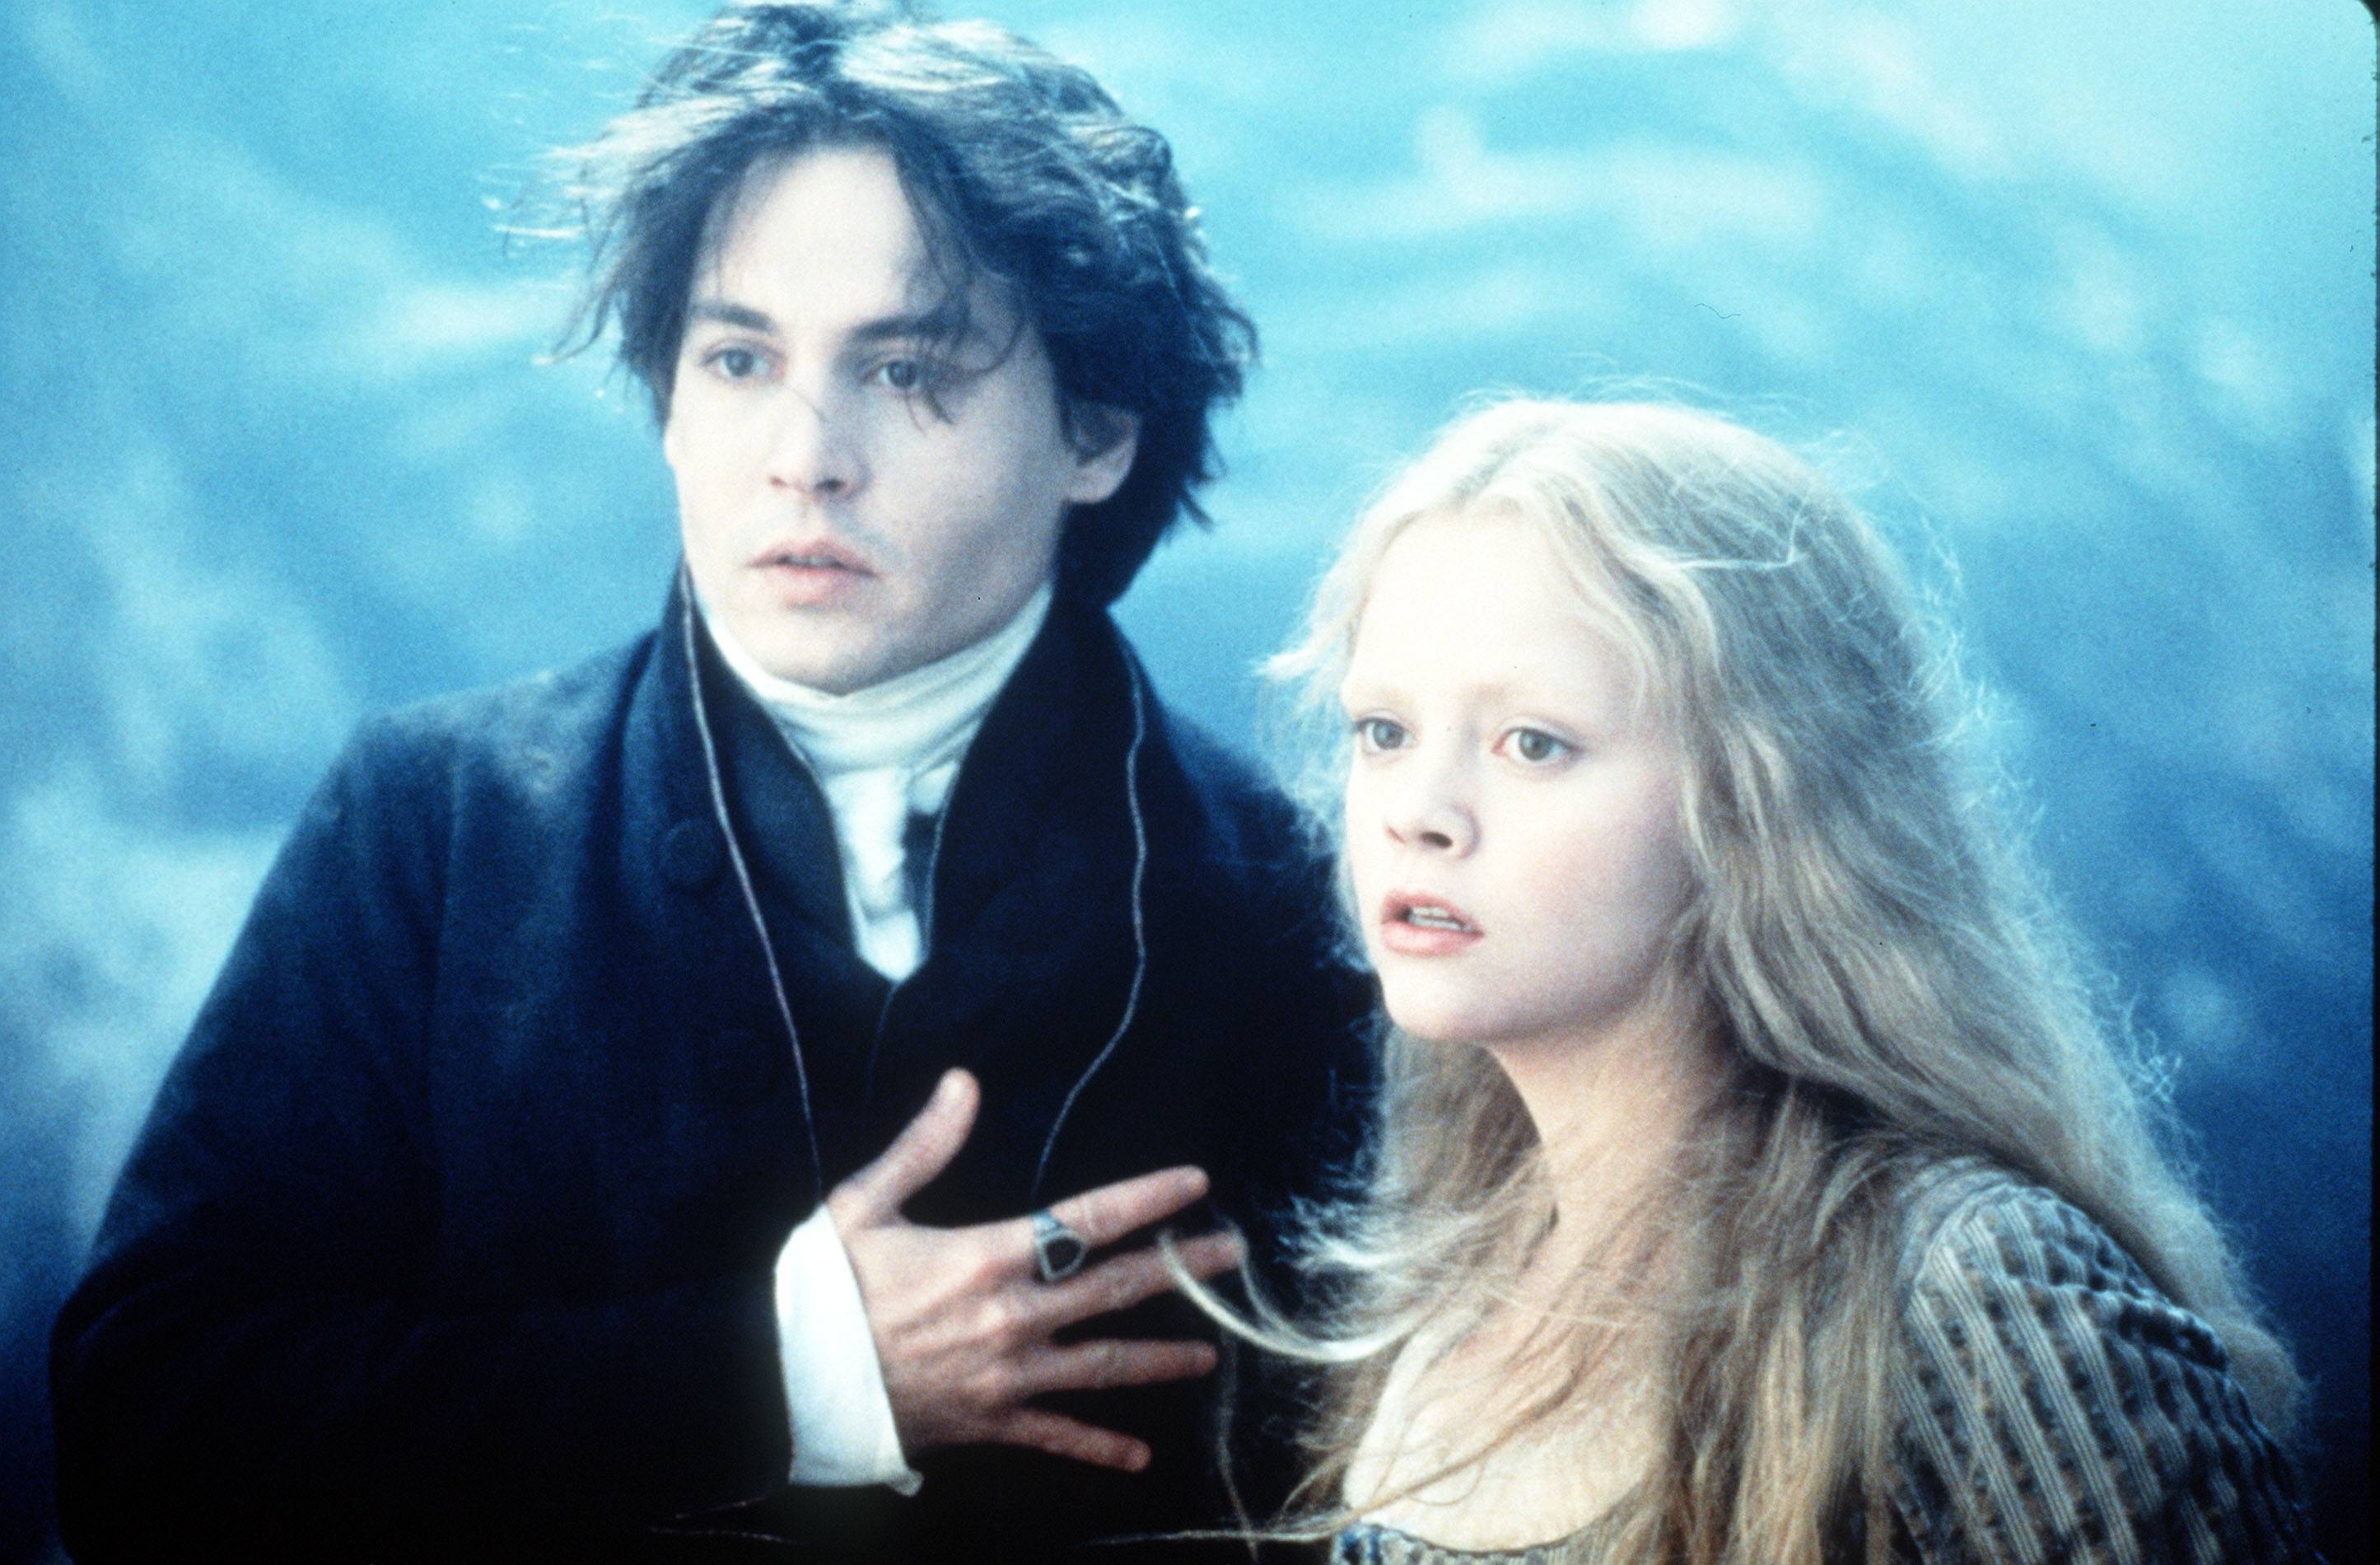 #Für diesen Fantasy-Horror mit Johnny Depp lohnt sich das Wachbleiben auch im Stream